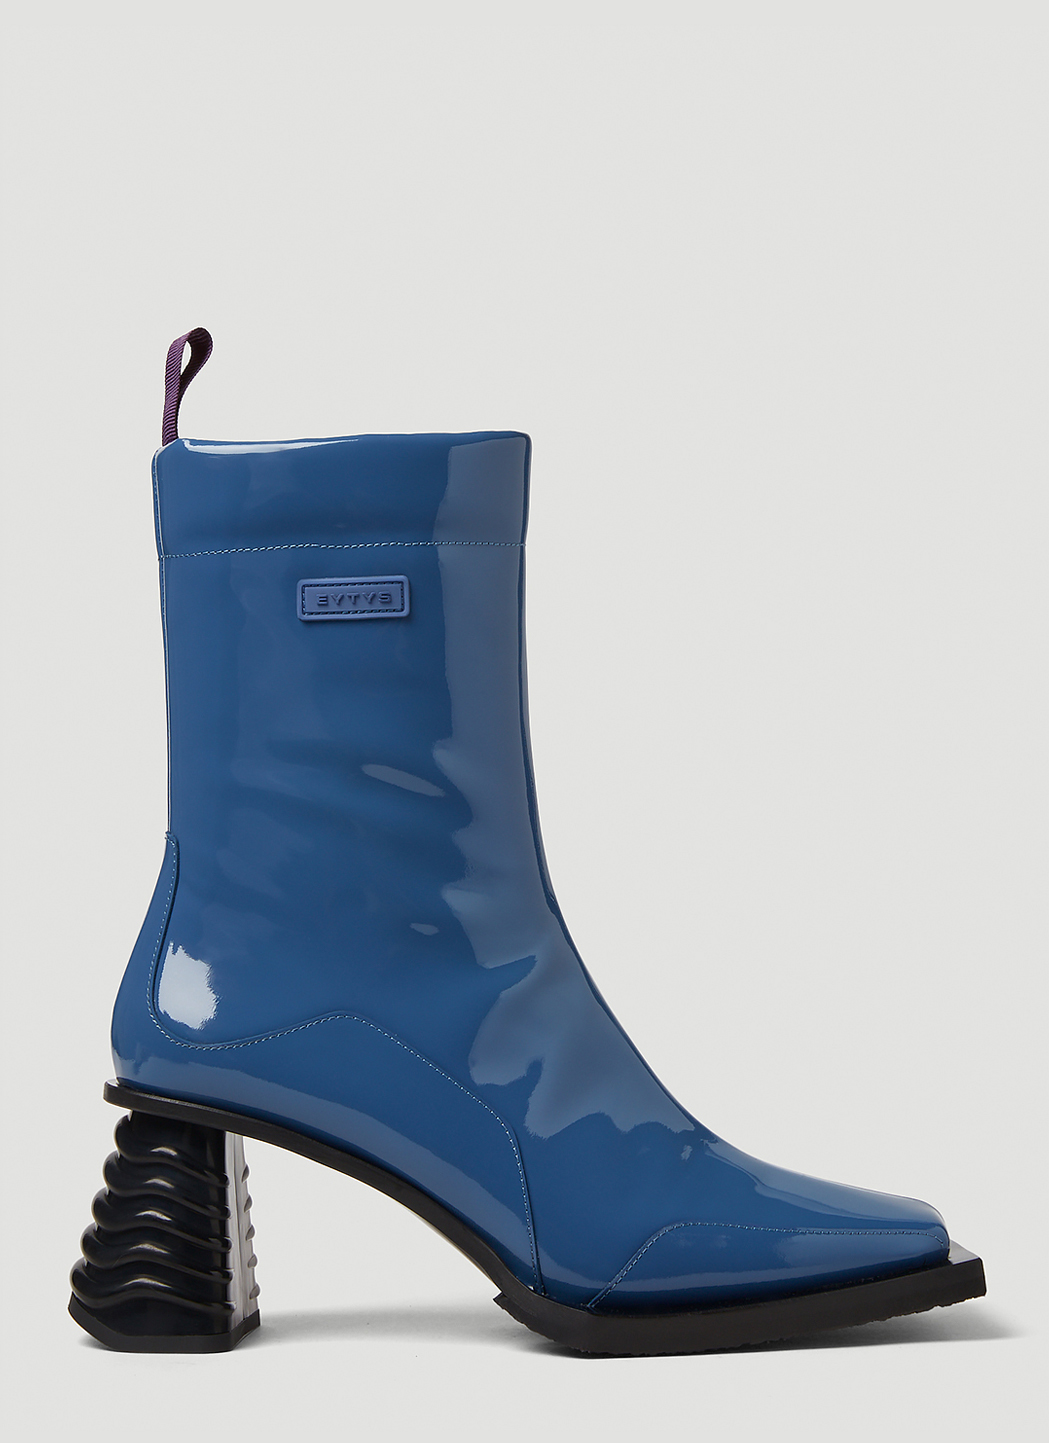 Gaia Heeled Boots